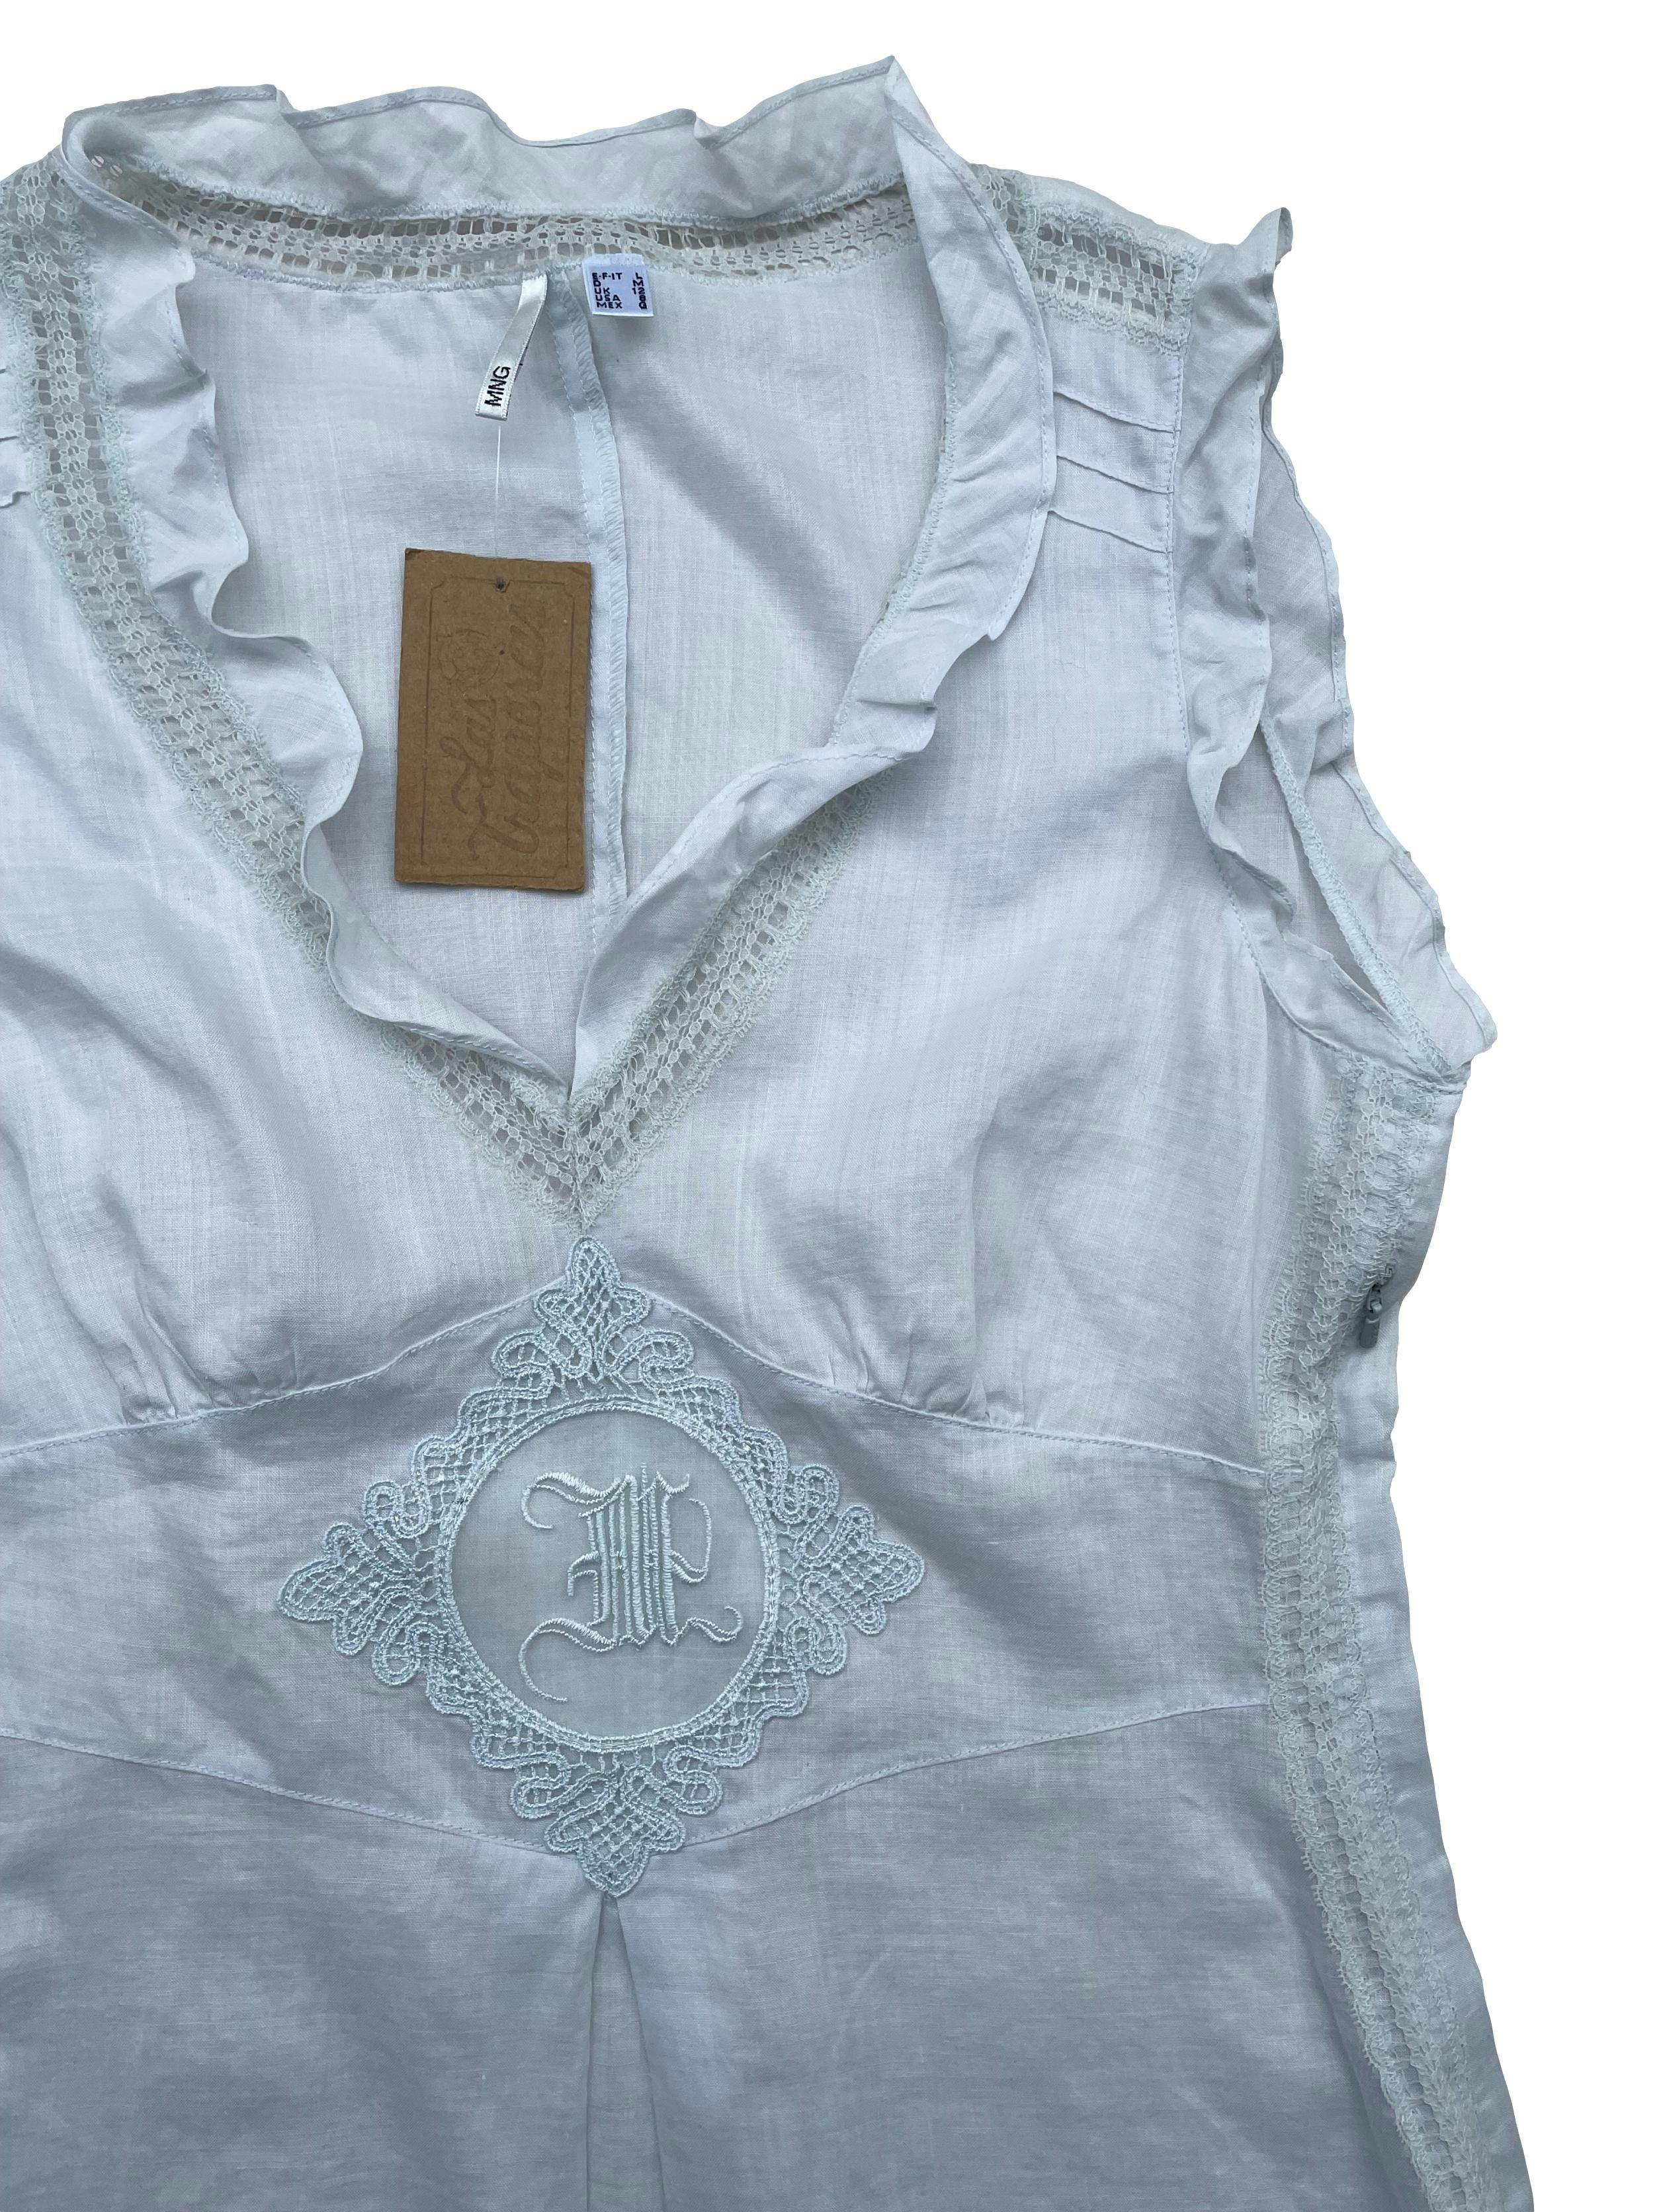 Blusa Mango 100% ramie celeste clarito con detalles bordados, cierre lateral. Busto 90cm Largo 56cm